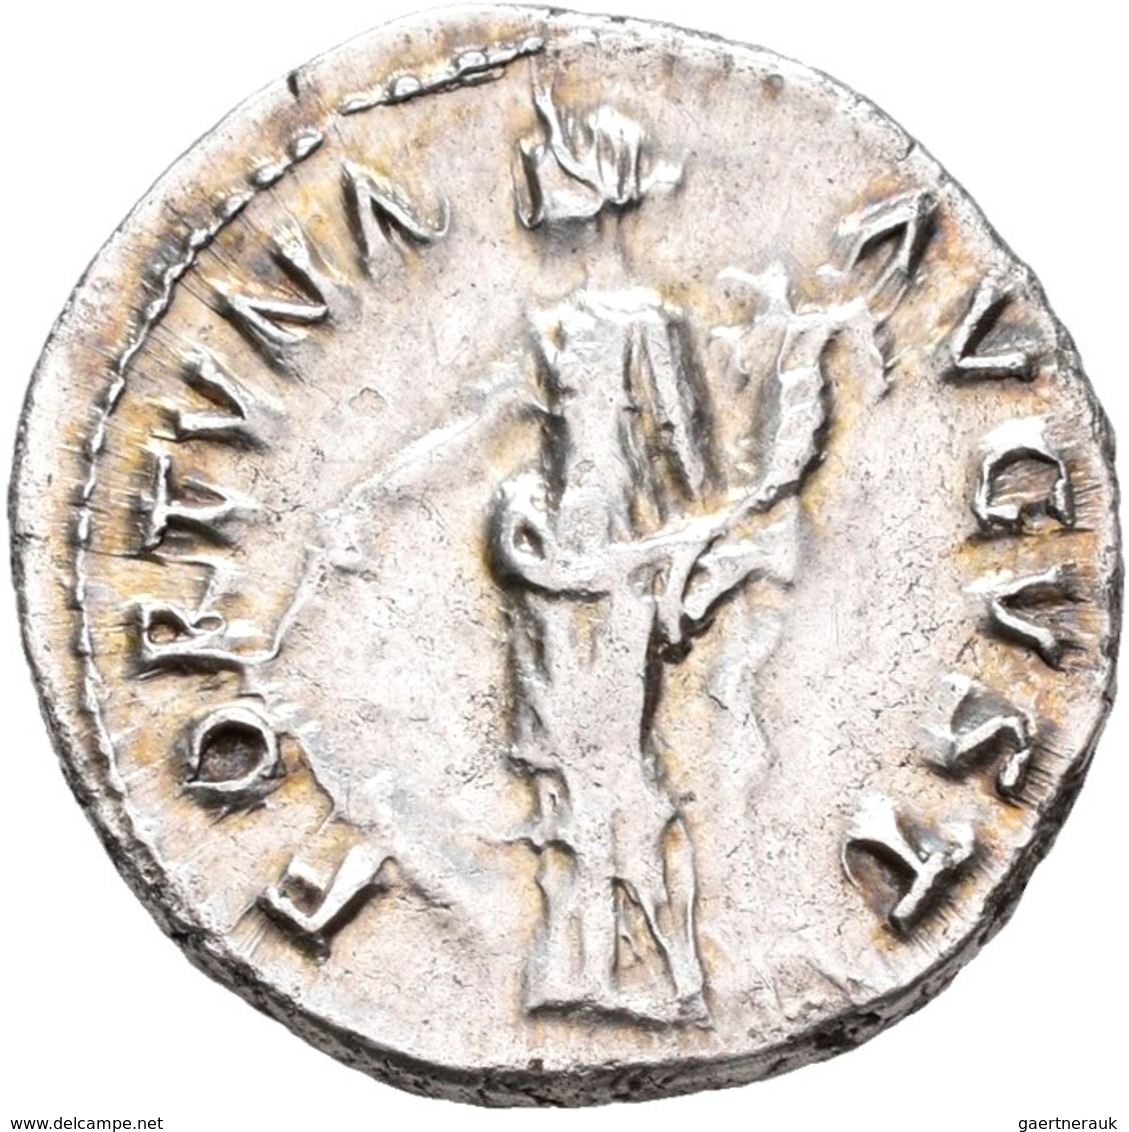 Antike: Lot 11 AR-Denare; Domitianus 69-96 Nerva 96-98, Traianus 98-117, Hadrianus 117-138, Antoninu